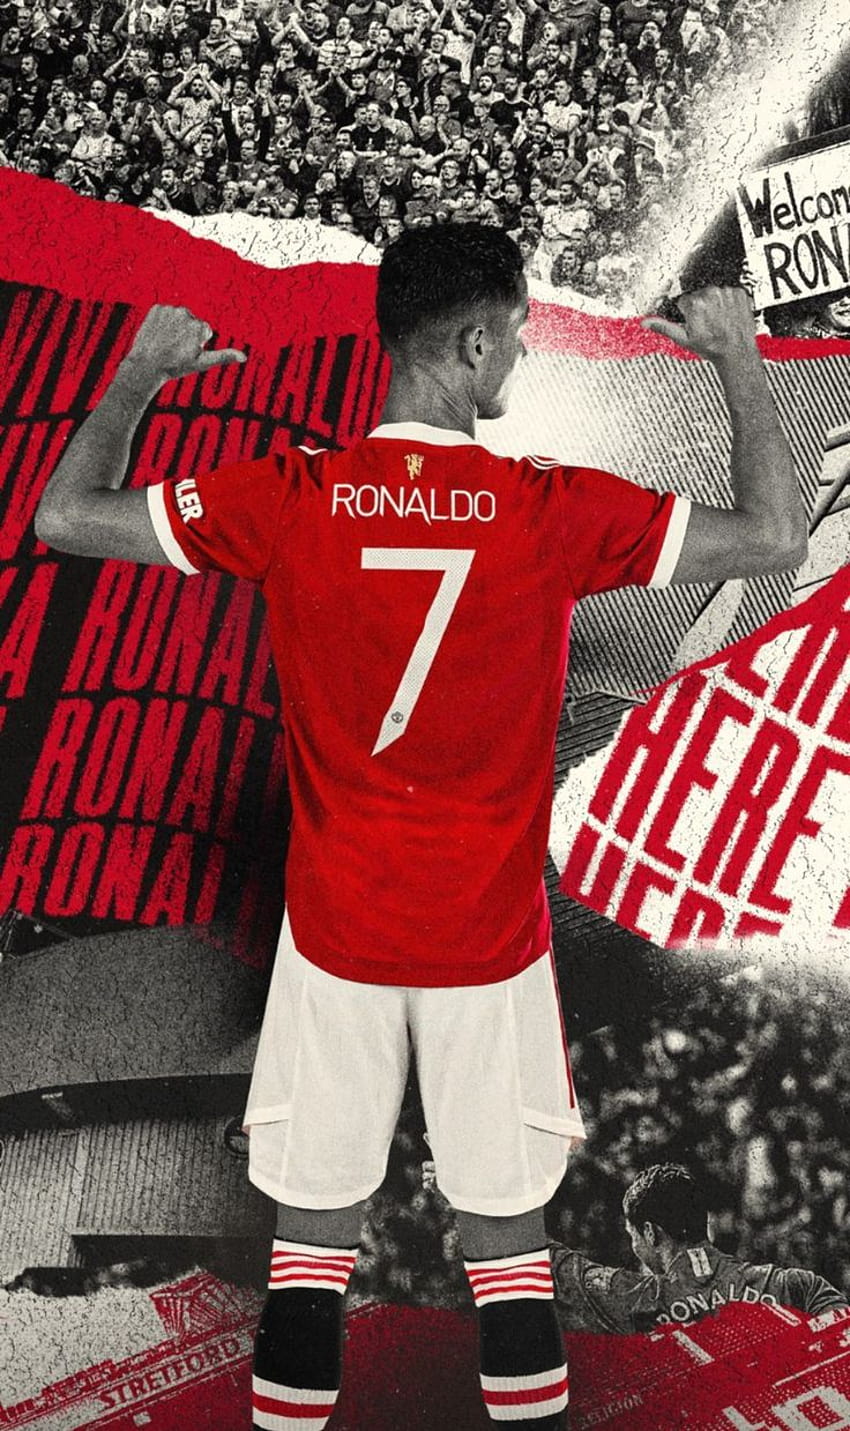 Cristiano Ronaldo, el bicho HD phone wallpaper